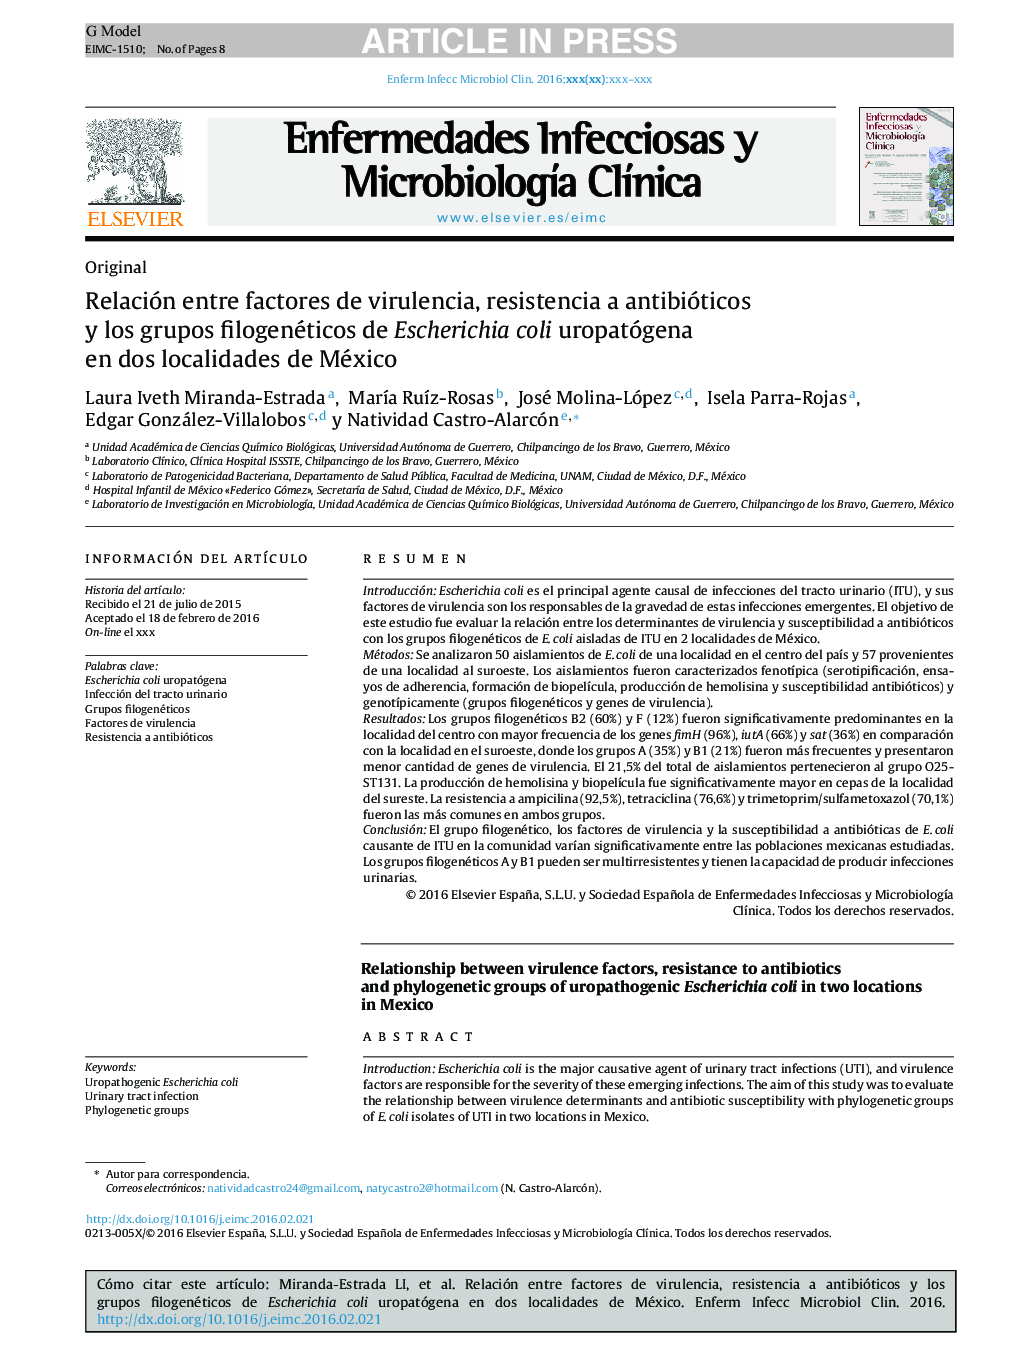 Relación entre factores de virulencia, resistencia a antibióticos y los grupos filogenéticos de Escherichia coli uropatógena en dos localidades de México